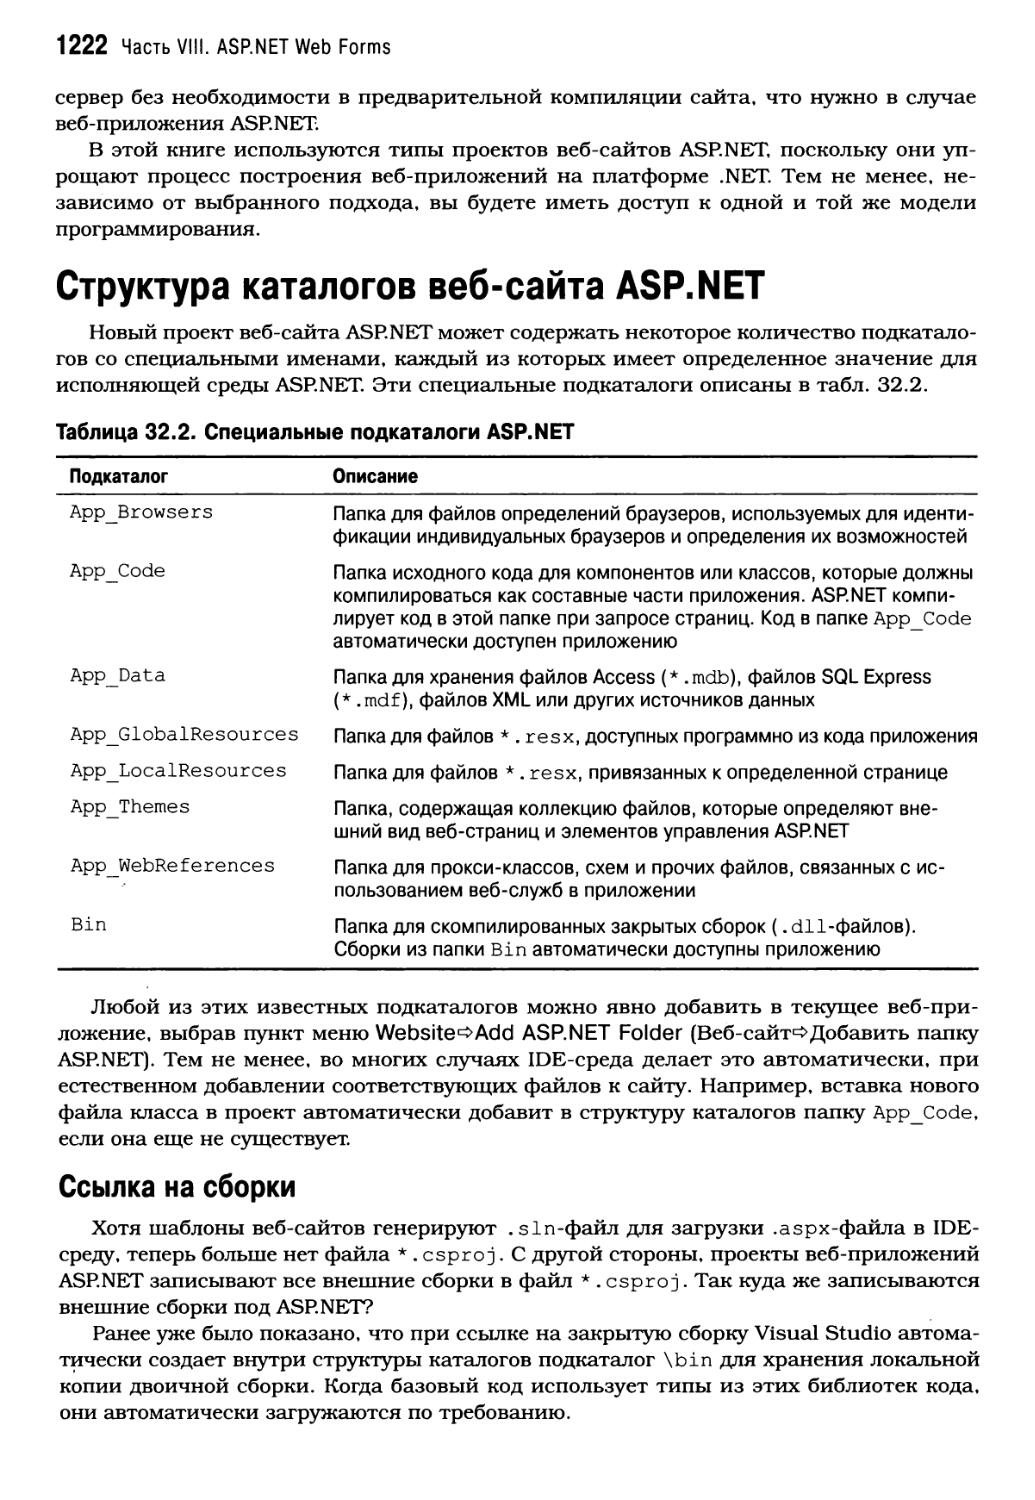 Структура каталогов веб-сайта ASP.NET